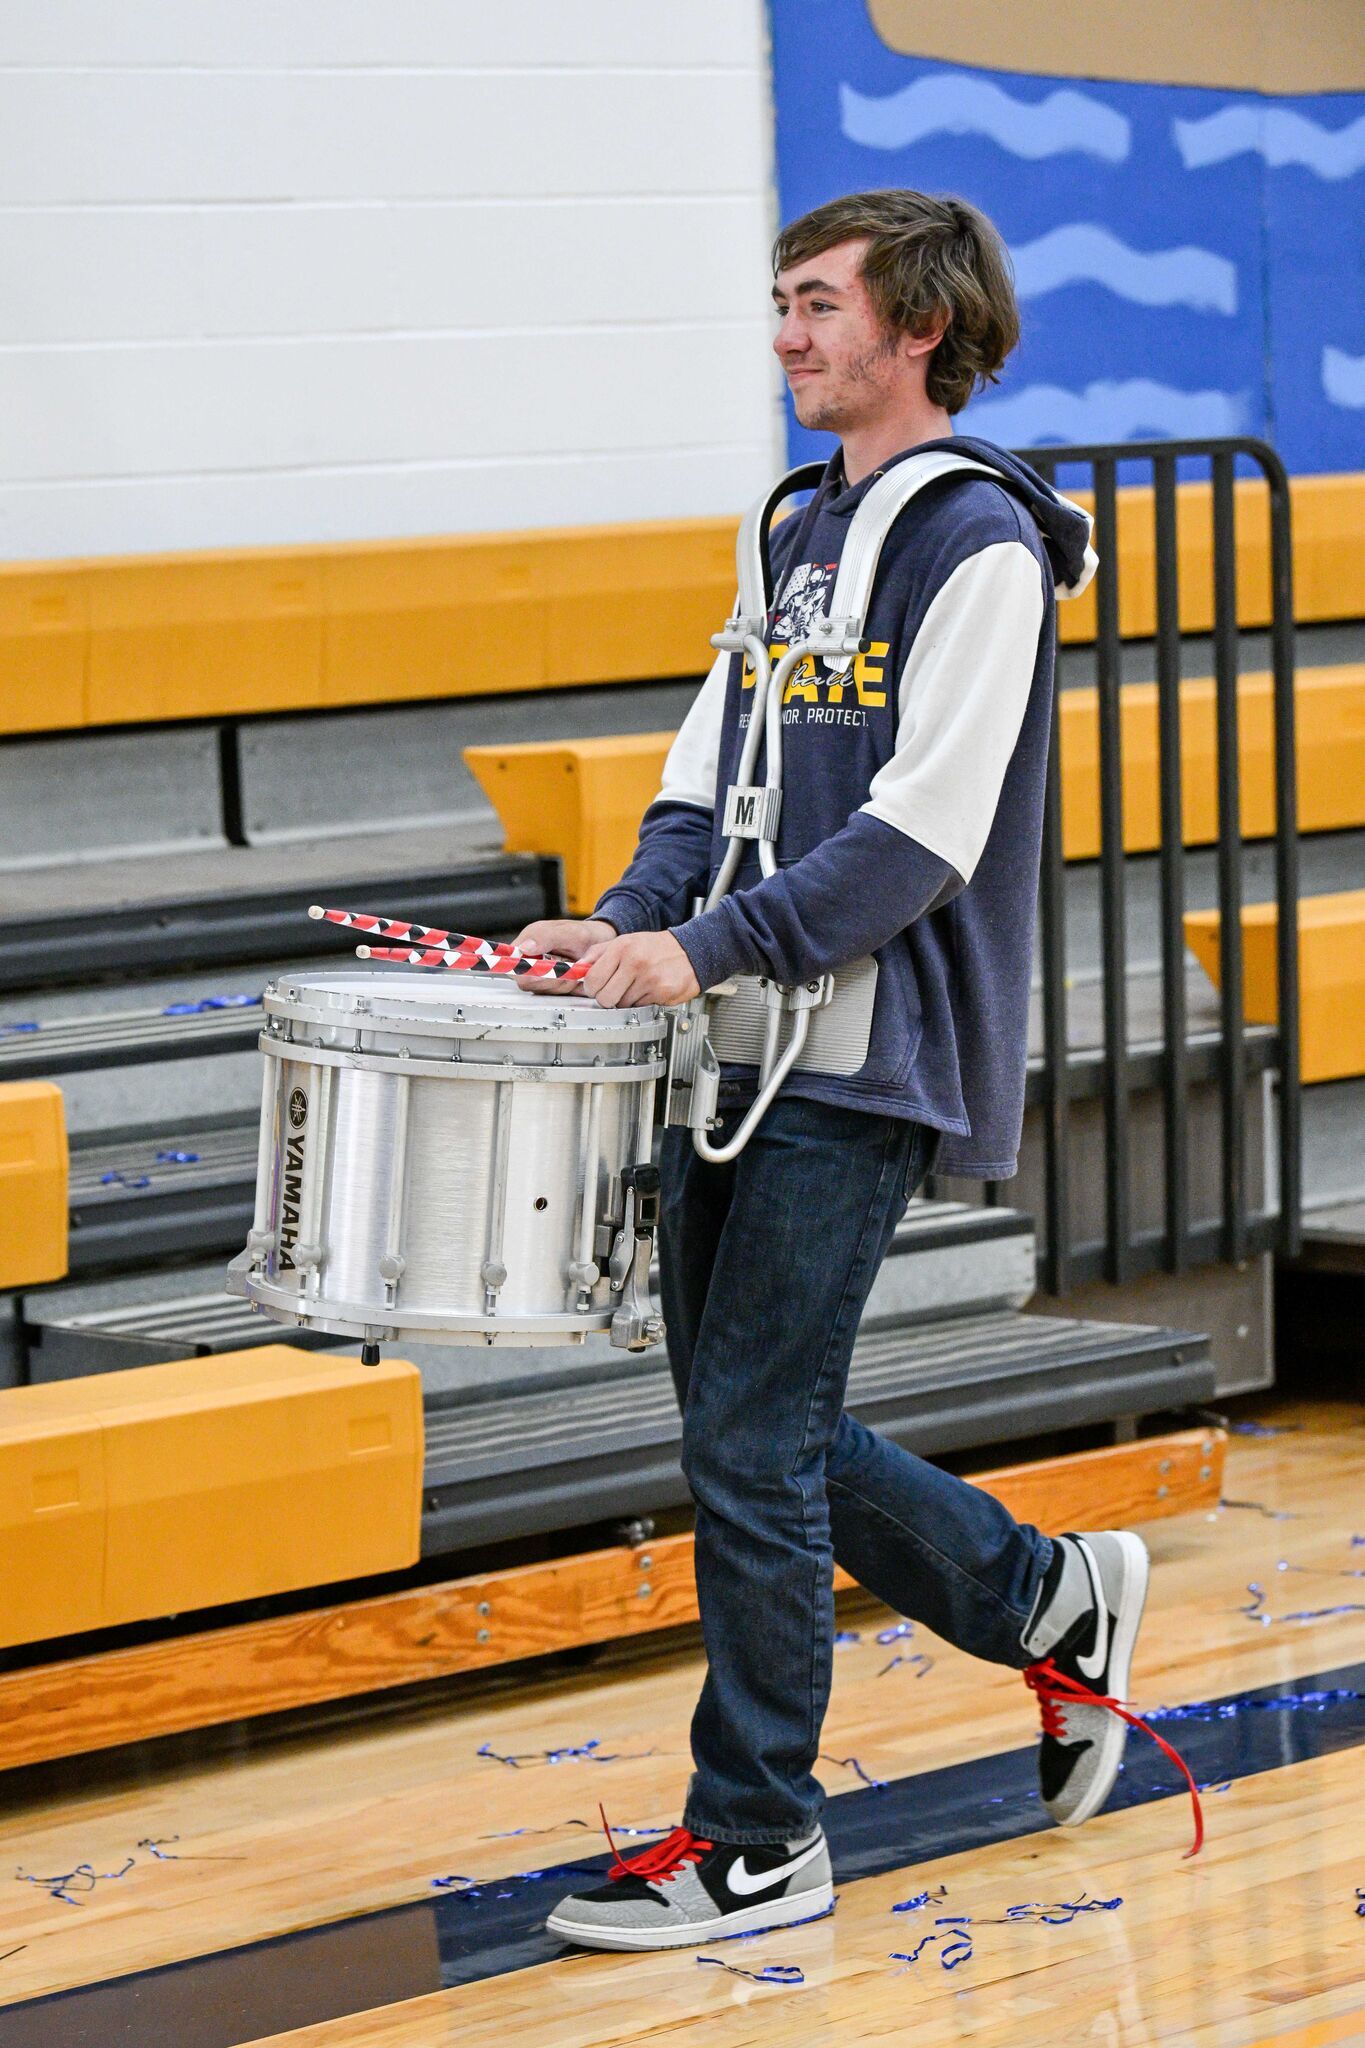 High school band percussionist